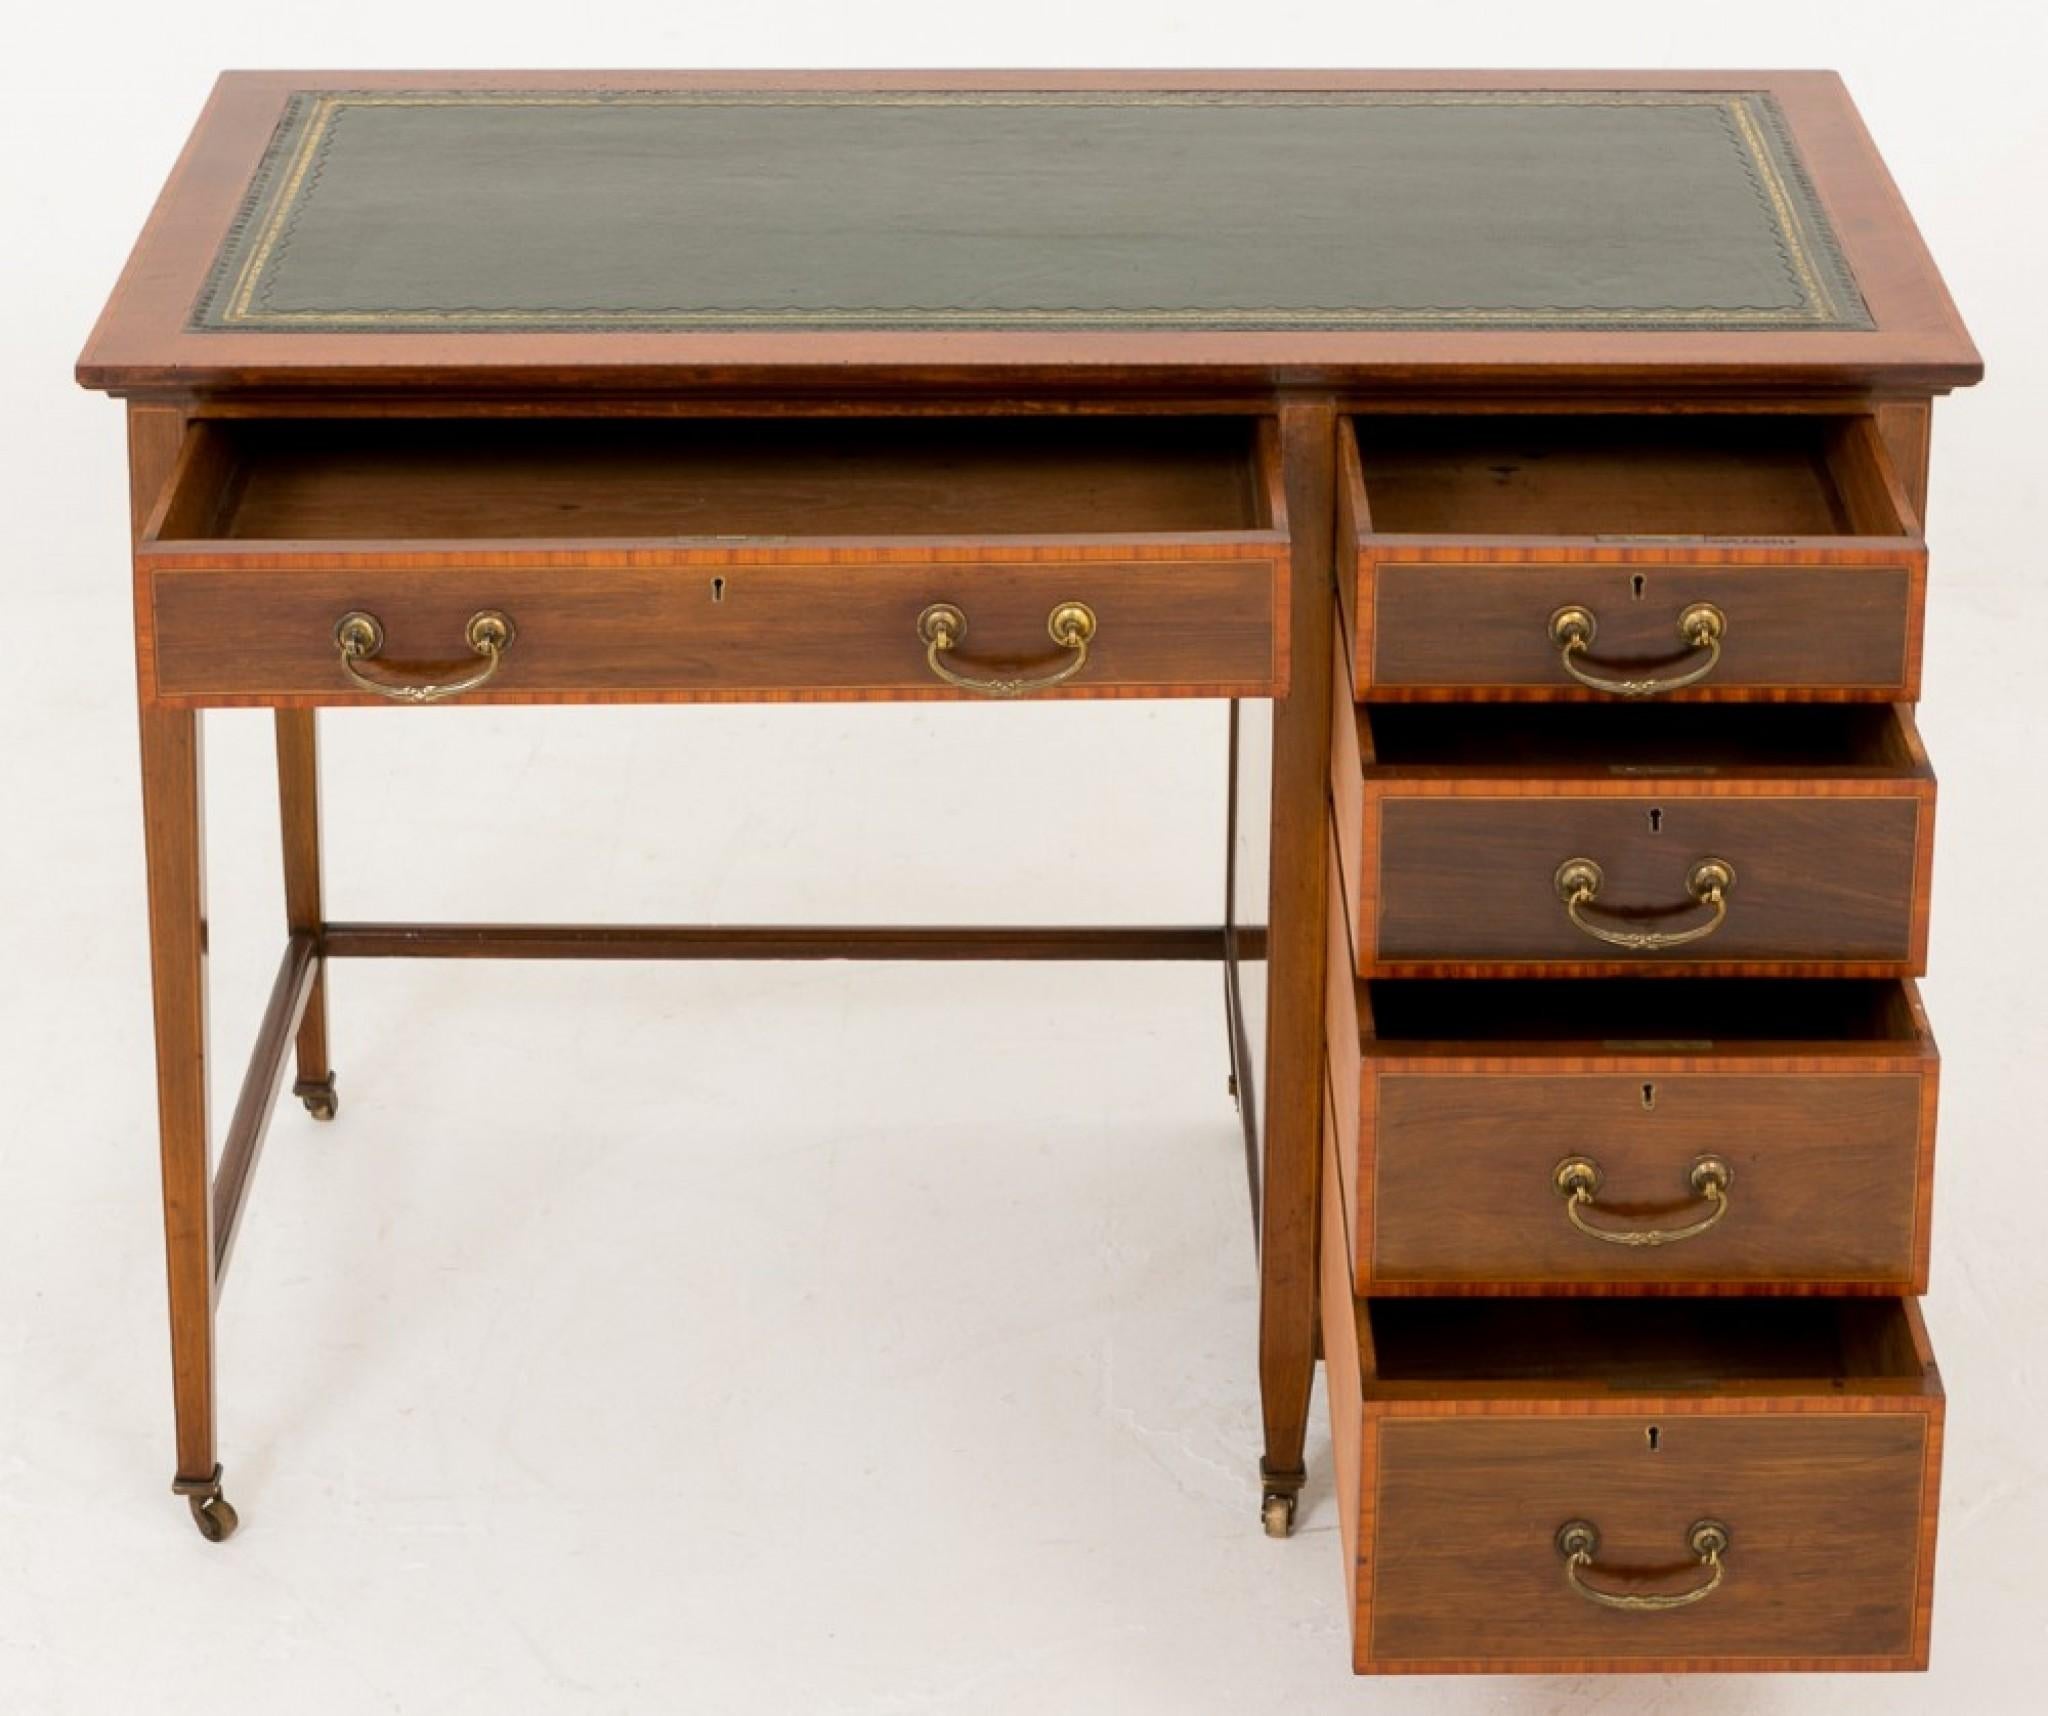 Sheraton Mahogany Desk - Antique Revival Desks Circa 1890 In Good Condition For Sale In Potters Bar, GB